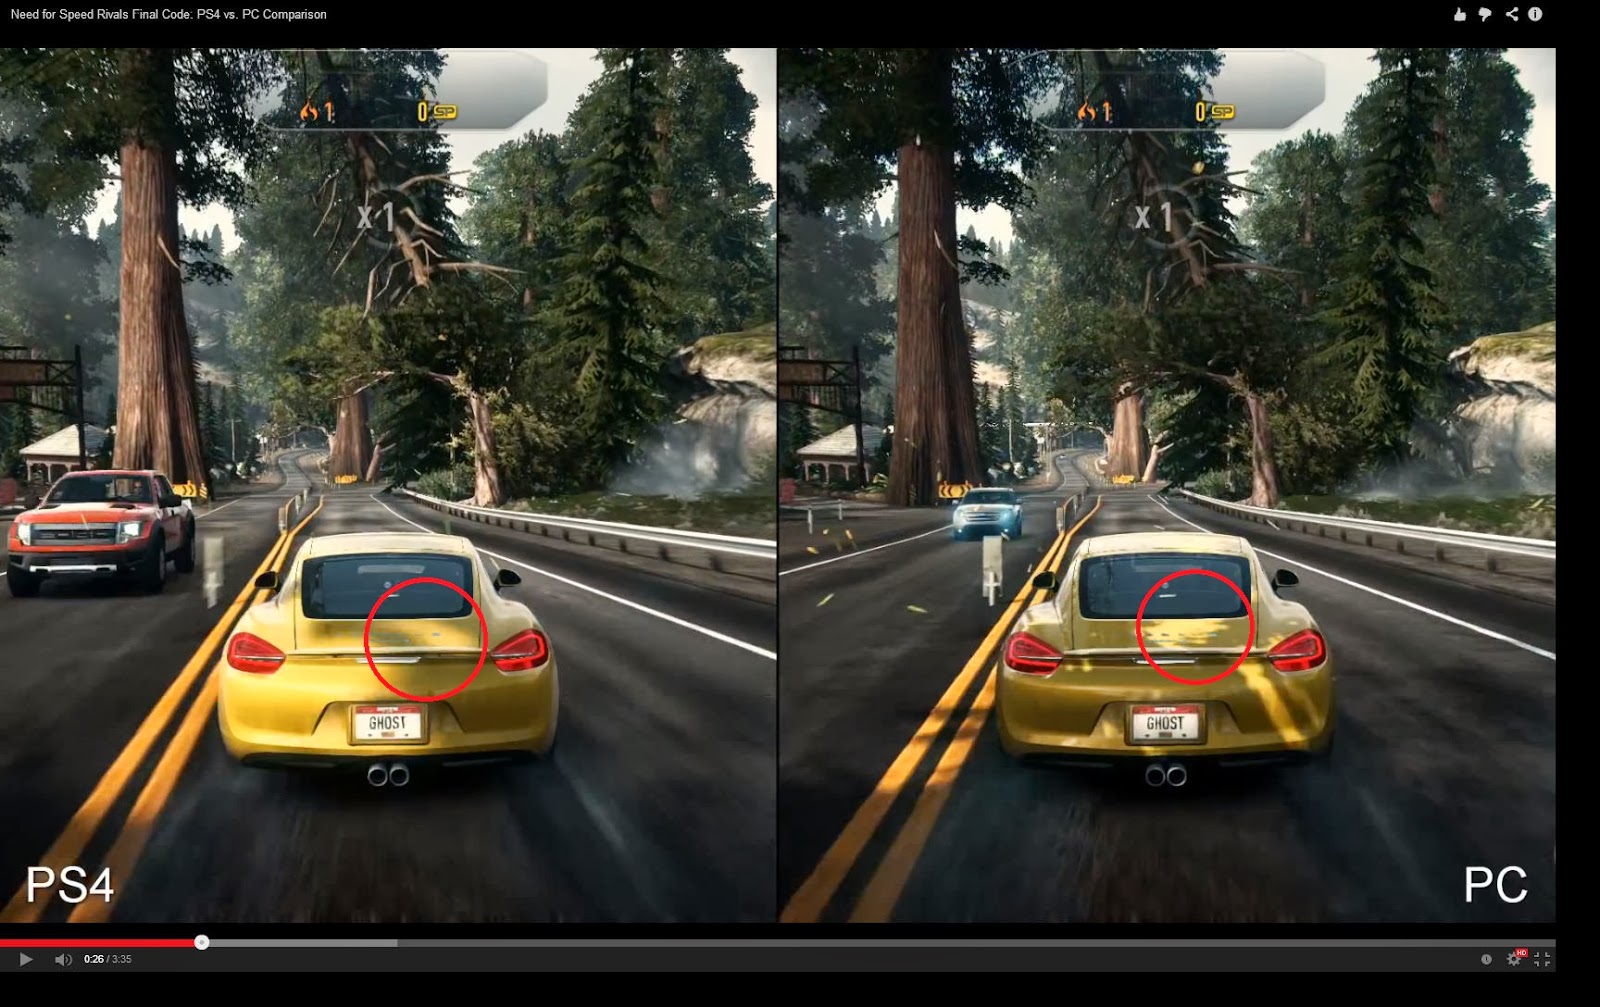 Как играть вдвоем на плейстейшен. Нфс ривалс хбокс 360. Need for Speed Rivals Xbox 360. Need for Speed Rivals PLAYSTATION 4. Нфс на пс3.